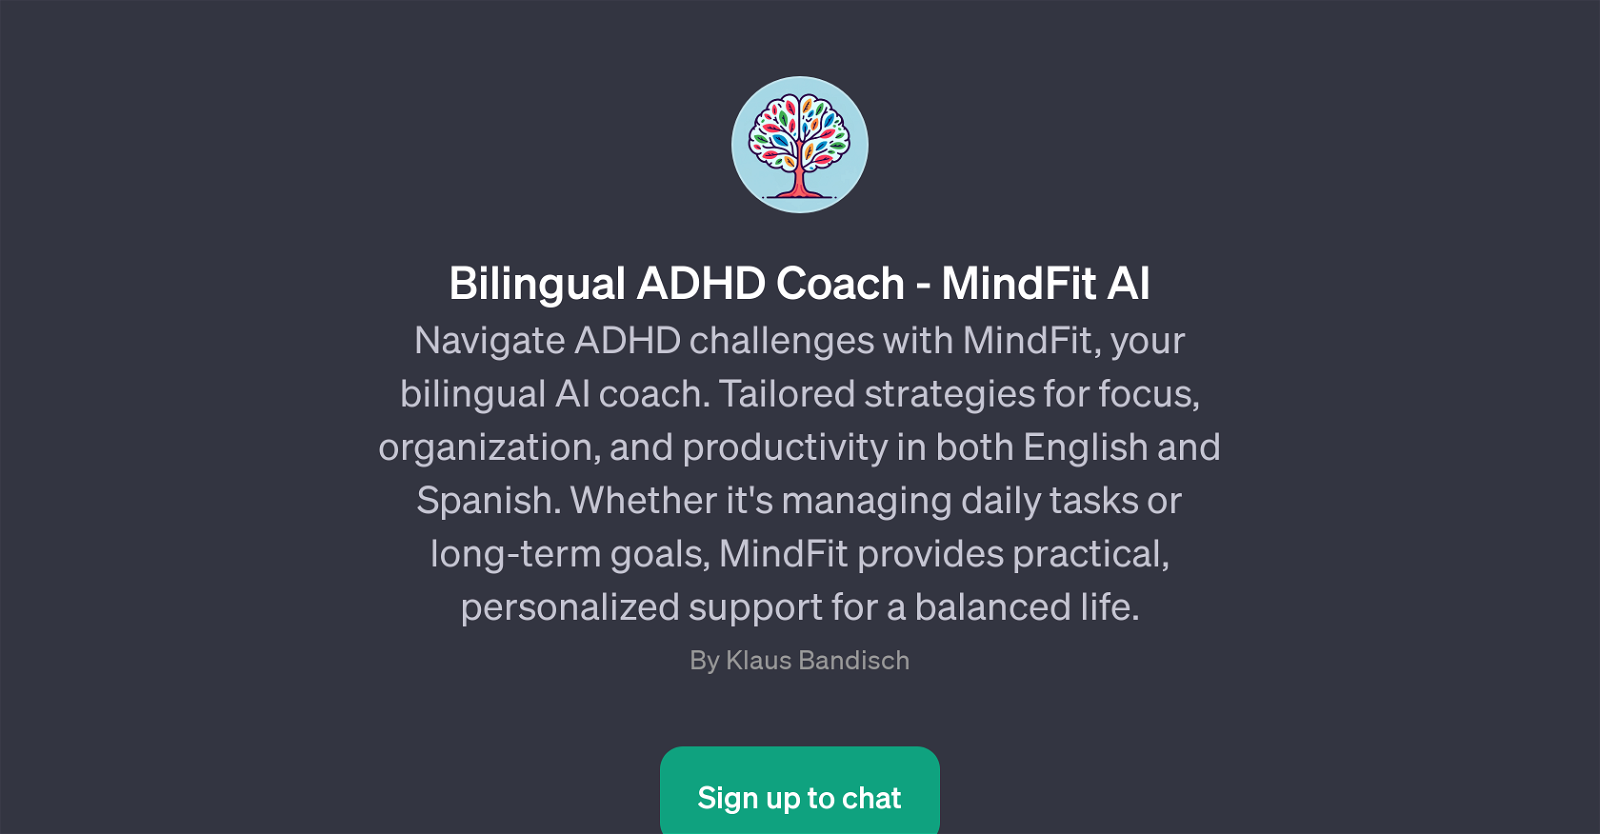 Bilingual ADHD Coach - MindFit AI website